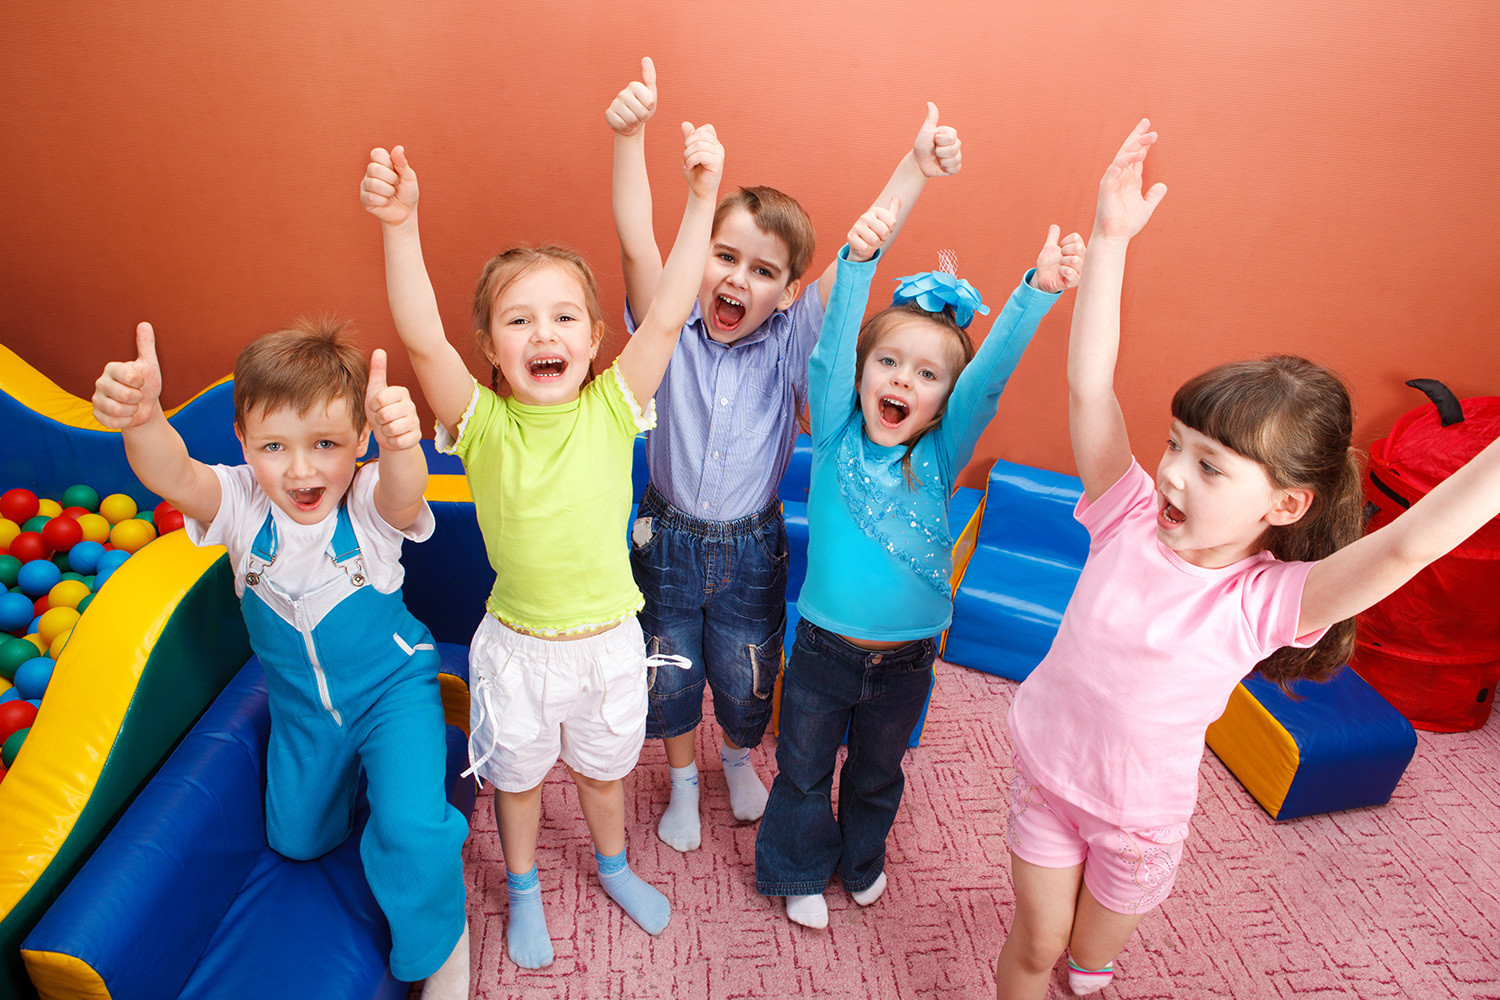 Українські школи вводять курс “Уроки щастя” для соціально-емоційного розвитку дітей